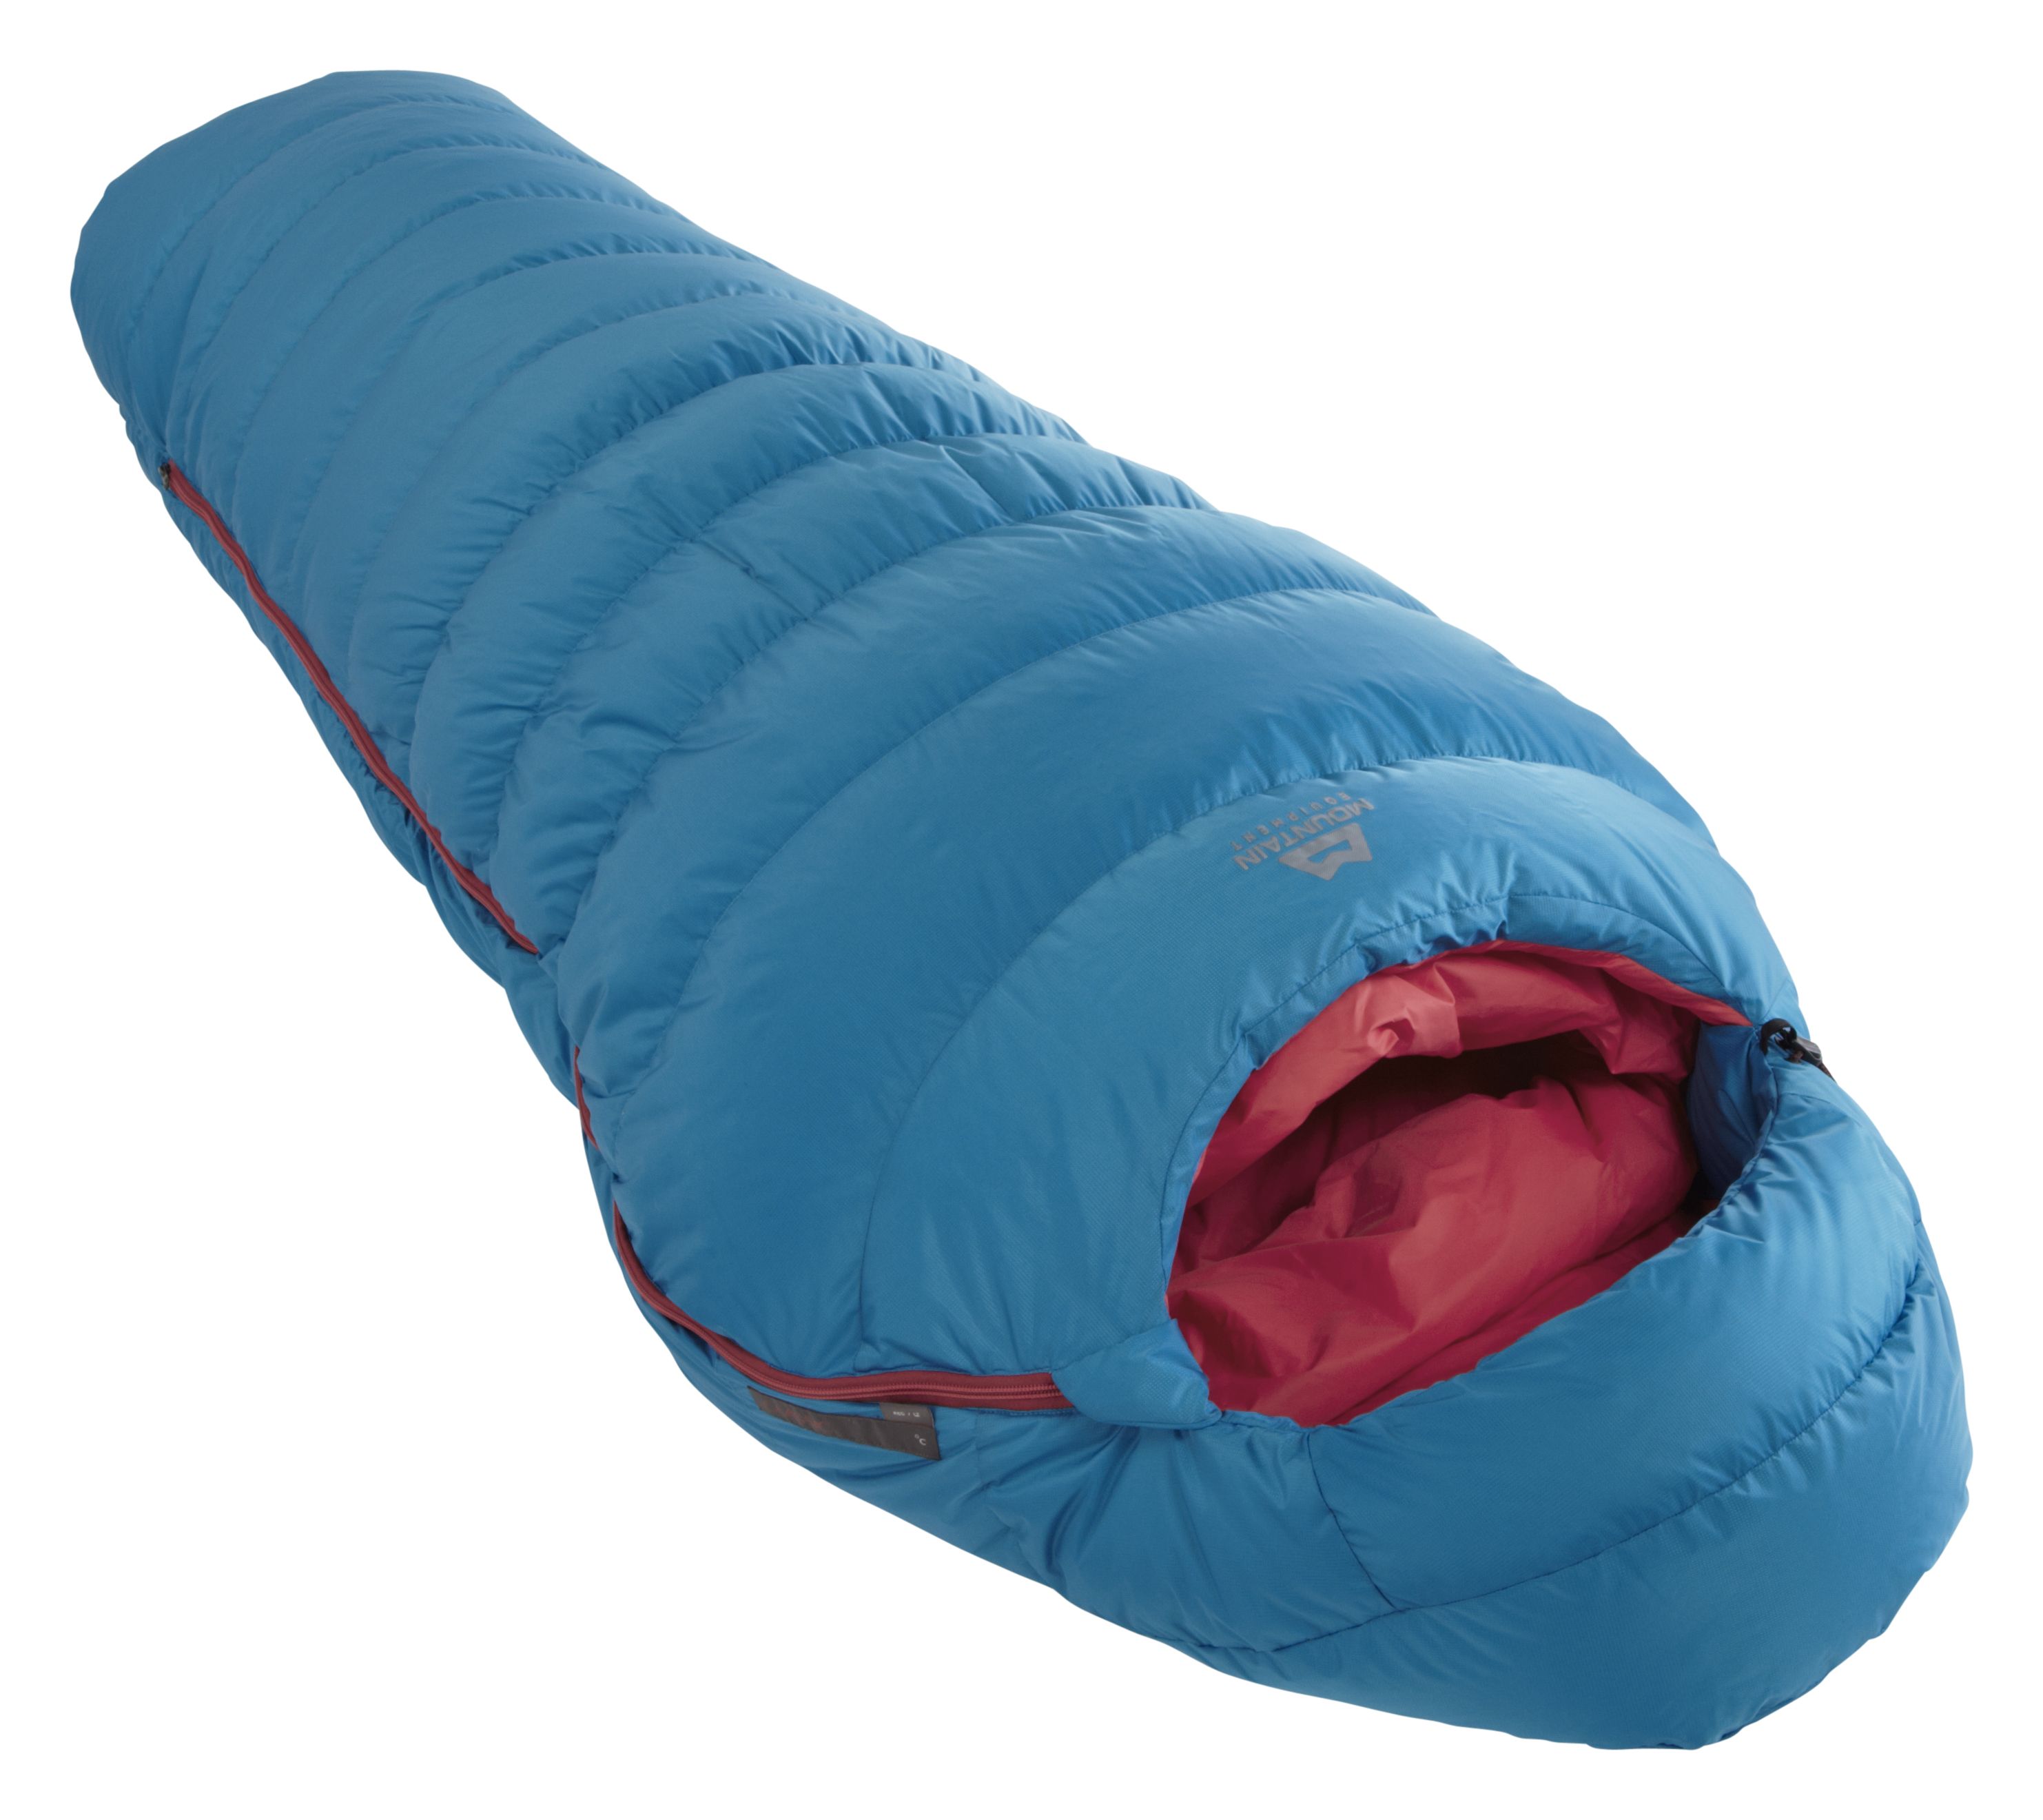 Mountain Equipment Classic 300 - Down sleeping bag - Women's